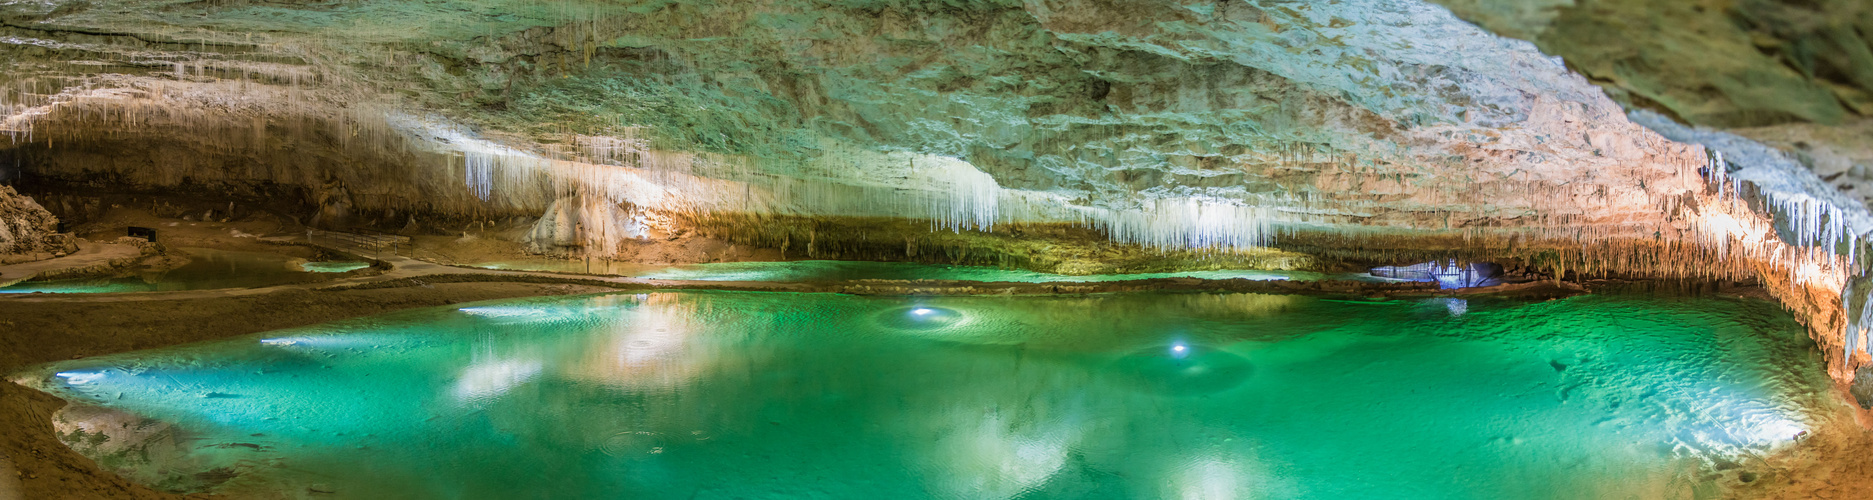 Klarer See in der Grotte de Choranche